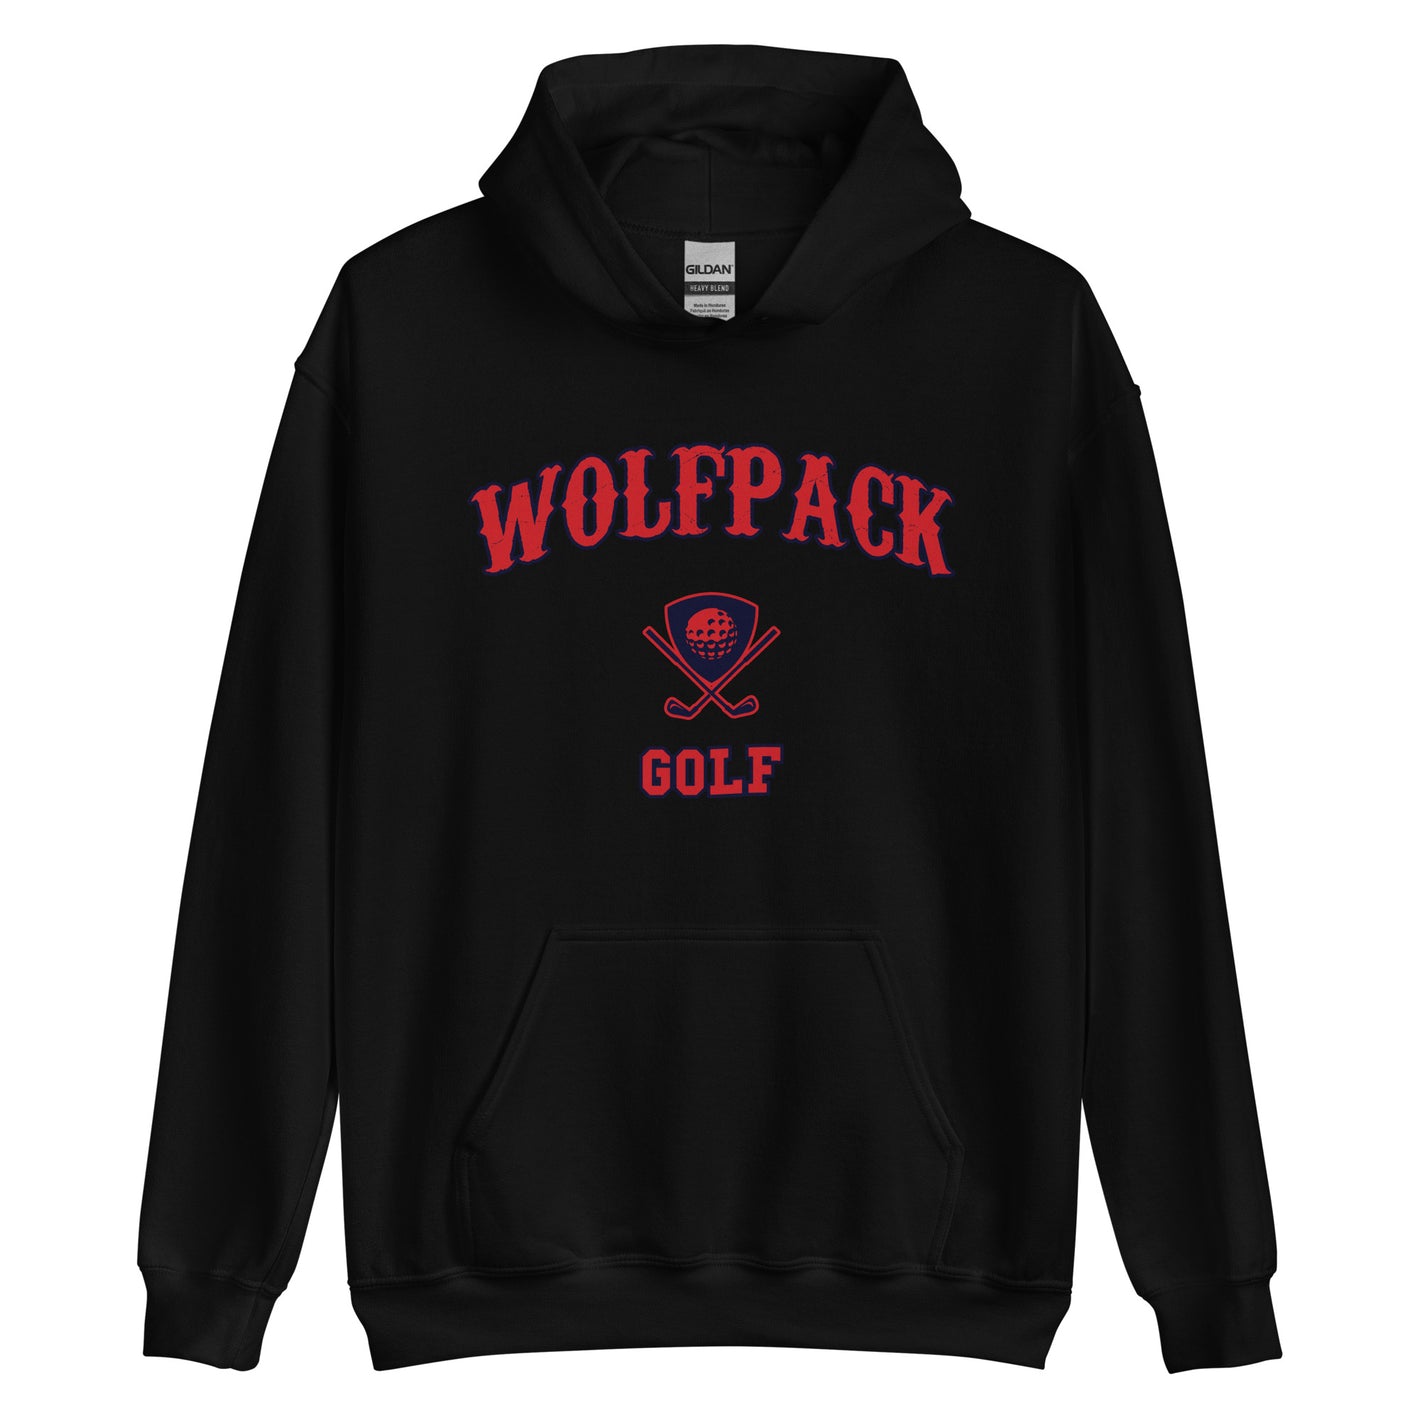 Wolfpack Golf Unisex Hoodie